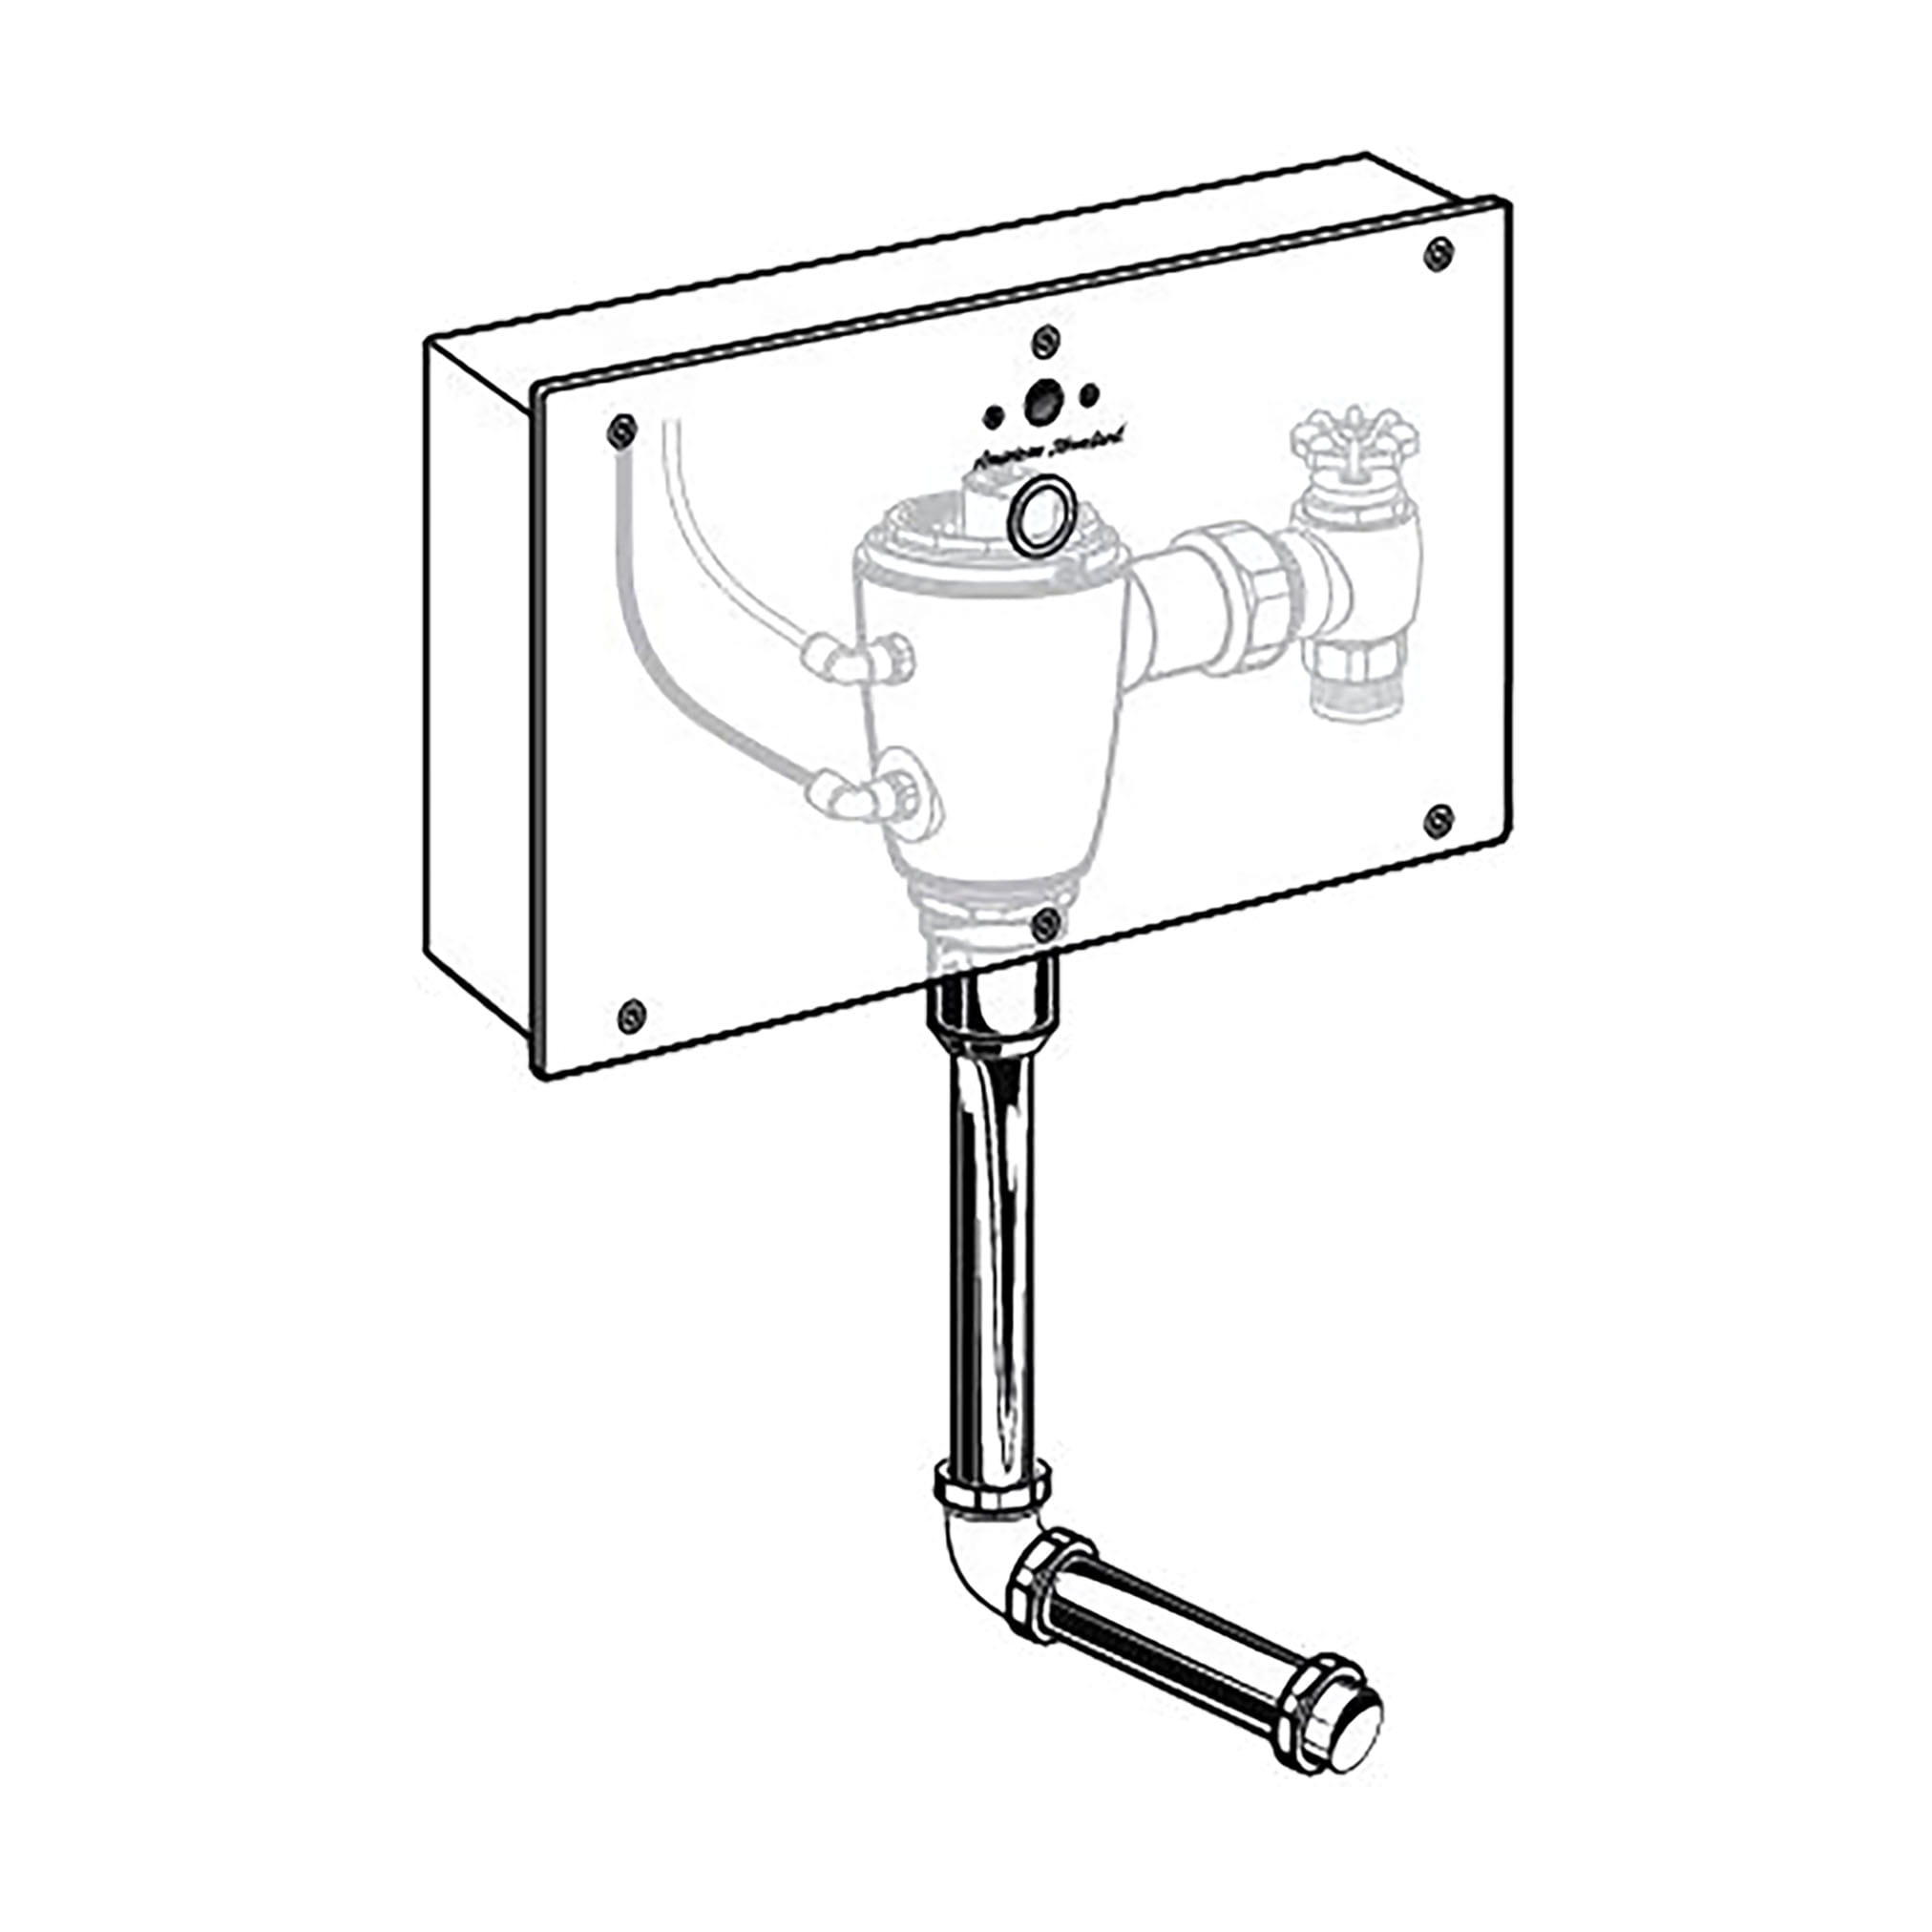 Ultima™ Selectronic - robinet de chasse pour urinoir, dissimulé dans un boîtier mural, modèle de base, de type à piston, 0,125 gpc/0,5 lpc